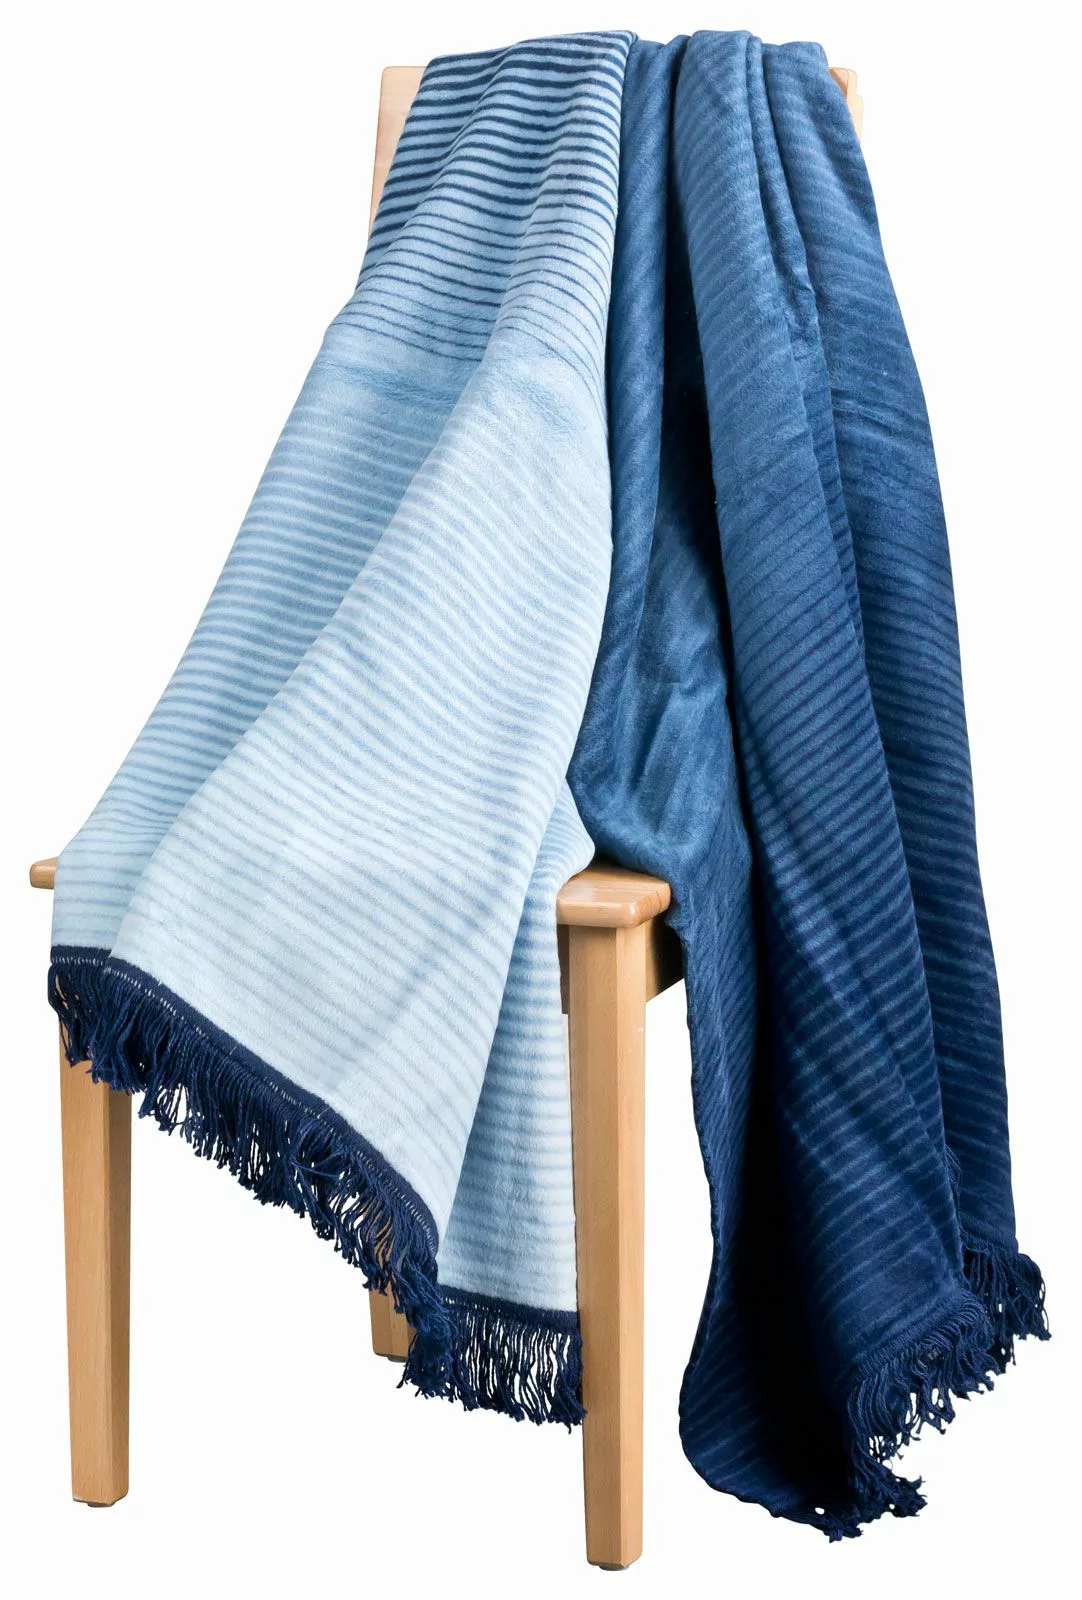 MOON Wolldecke Kuscheldecke Wohndecke 150x200 Stripes mit Fransen -blau günstig online kaufen